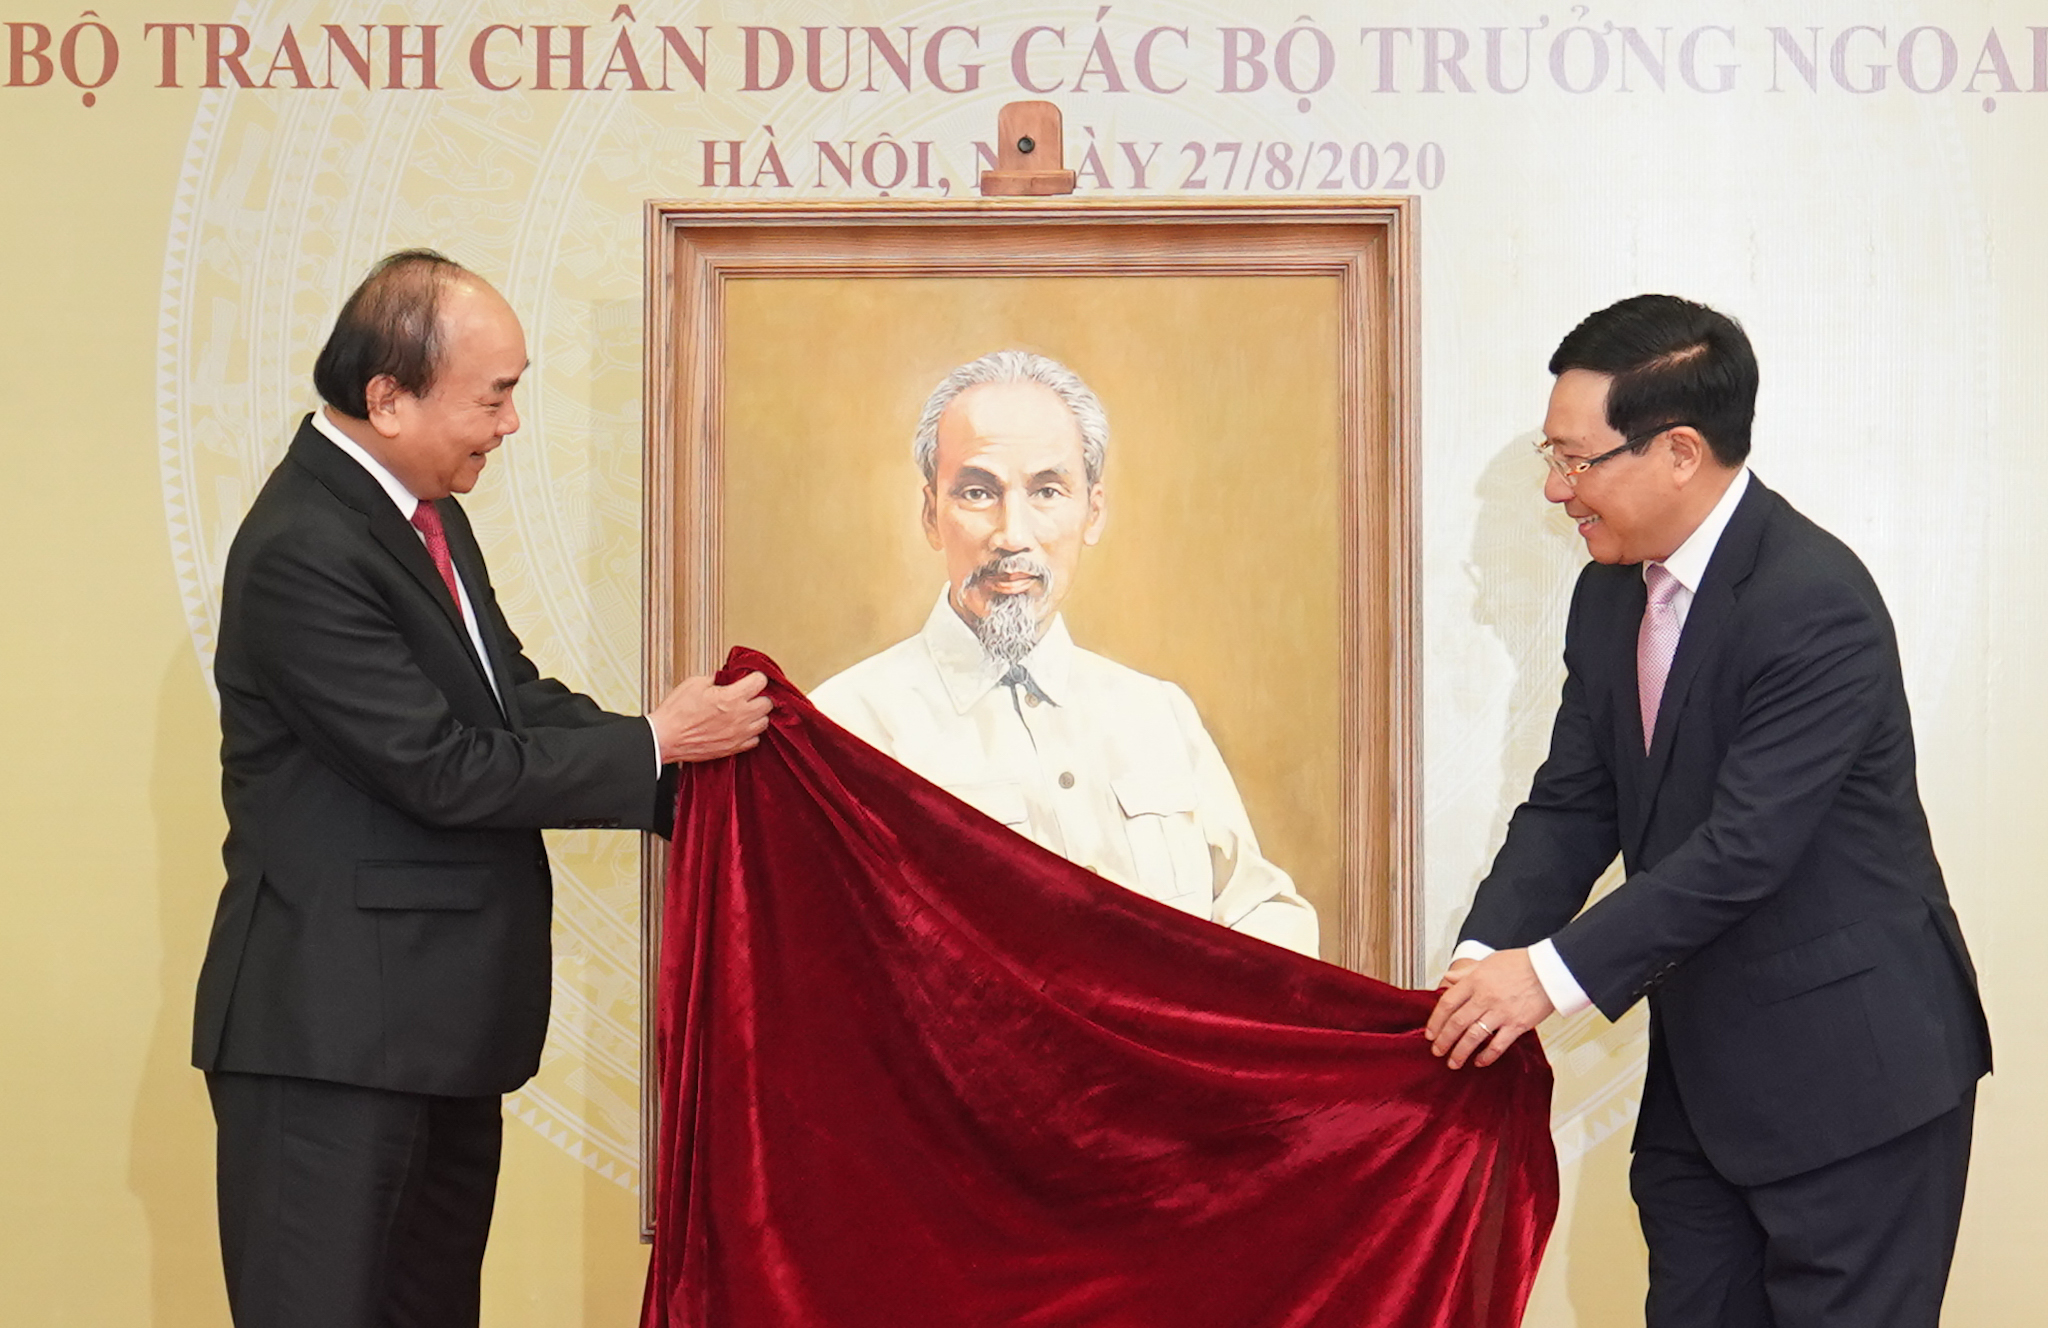 Thủ tướng dự kỷ niệm 75 năm thành lập ngành ngoại giao Việt Nam 5